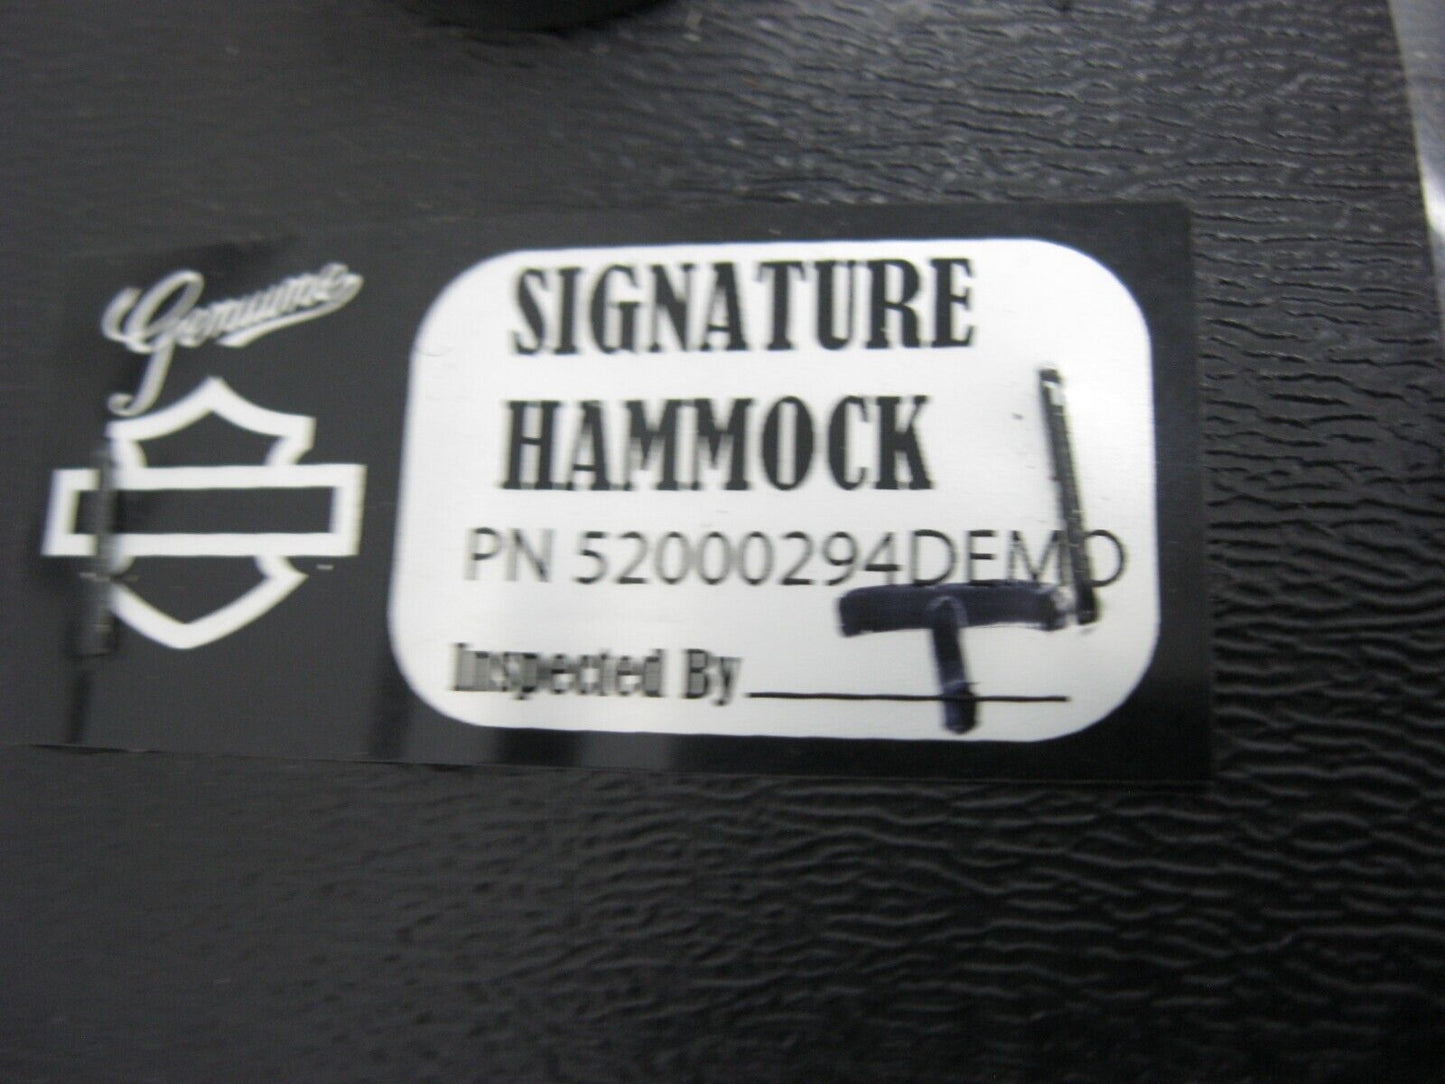 Harley-Davidson Hammock Touring Seat 52000294 DEMO